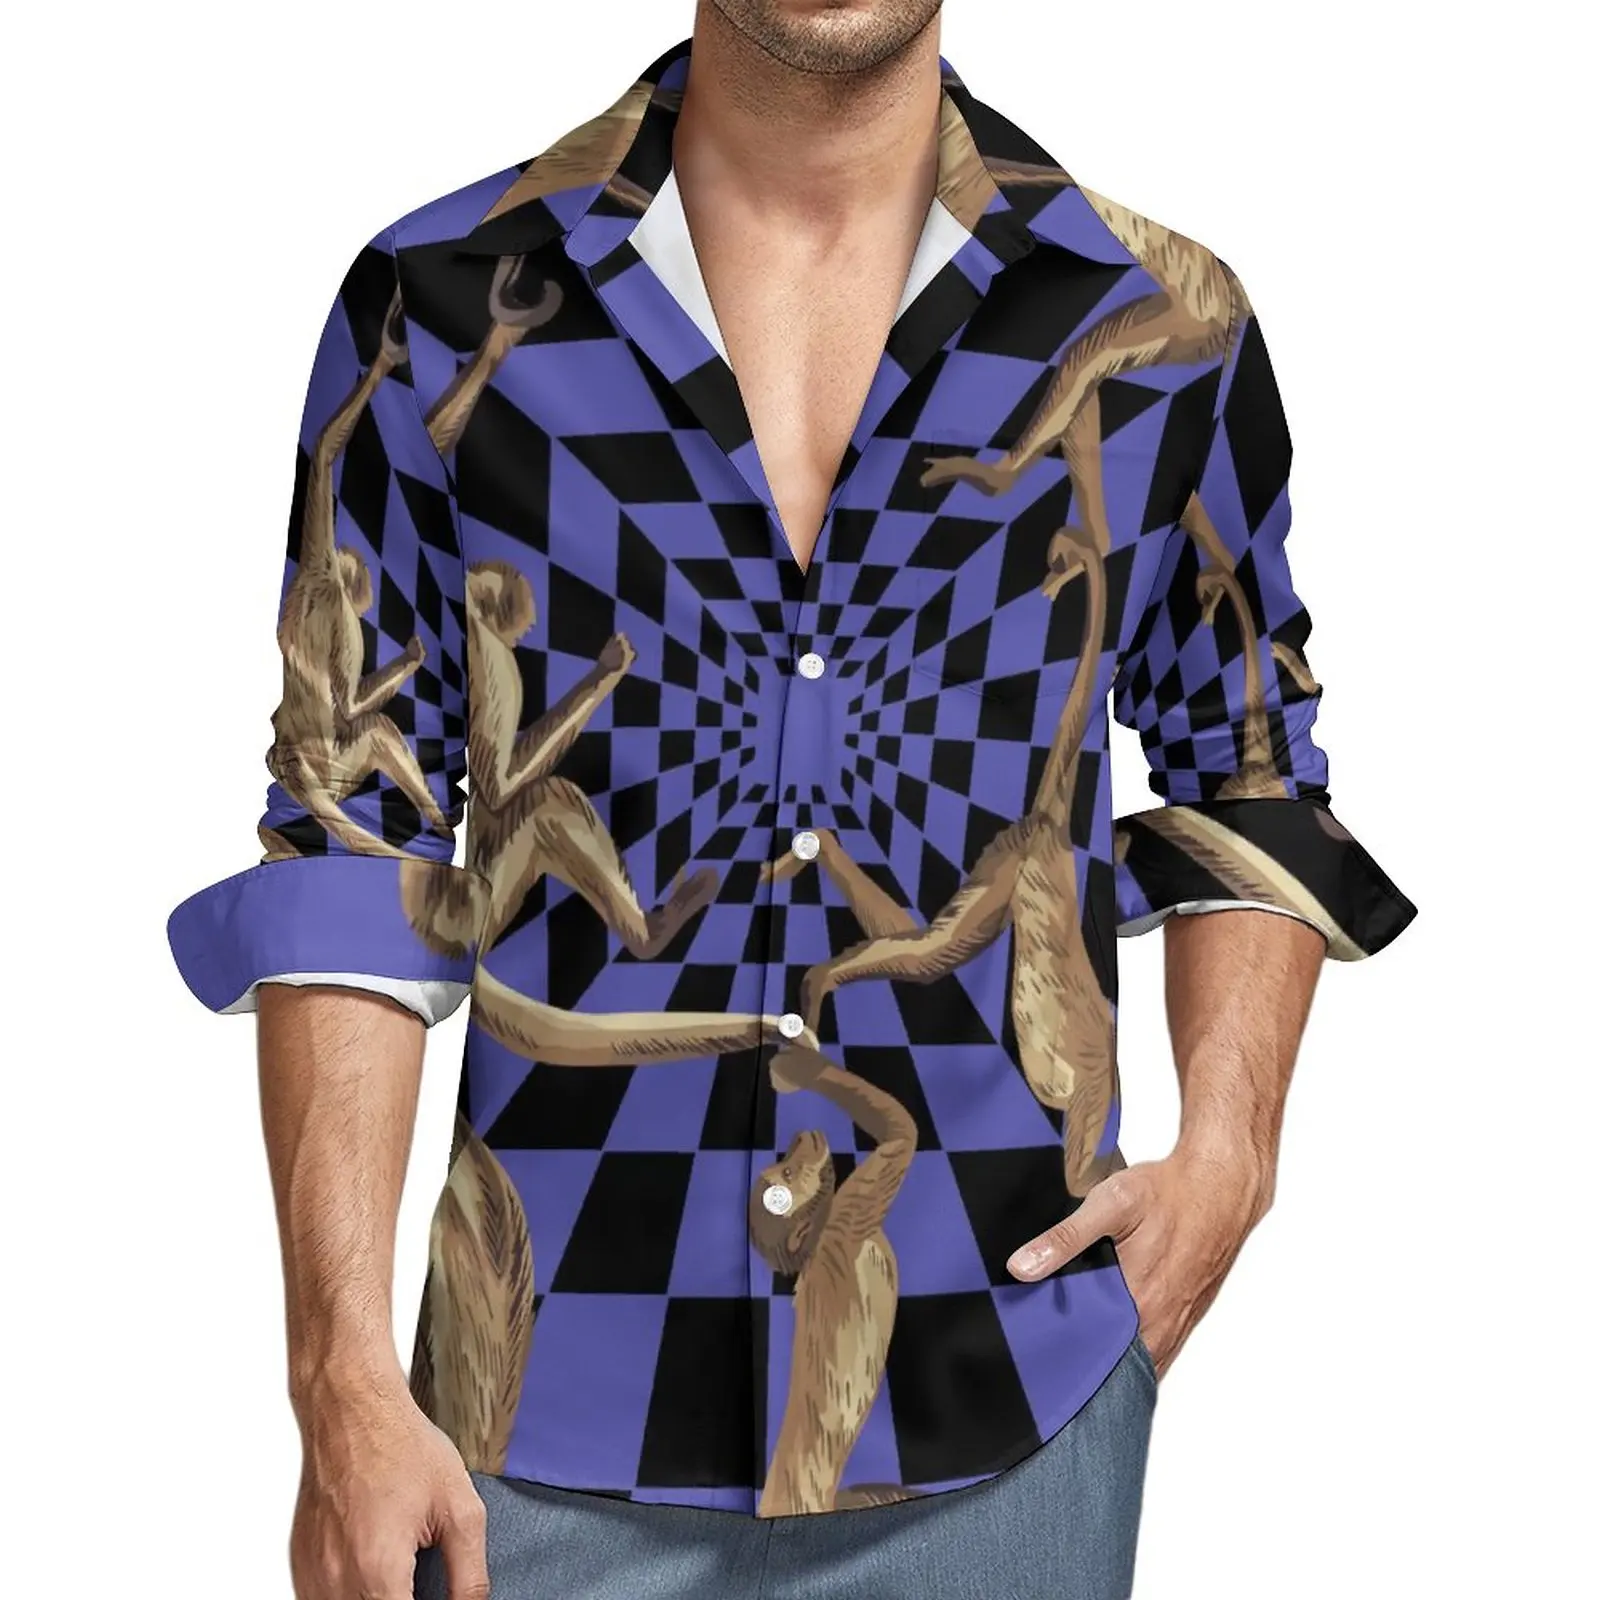 

Рубашка с принтом обезьяны, Осенние повседневные рубашки с геометрическим рисунком, мужские крутые блузки с длинным рукавом, индивидуальная уличная одежда размера плюс